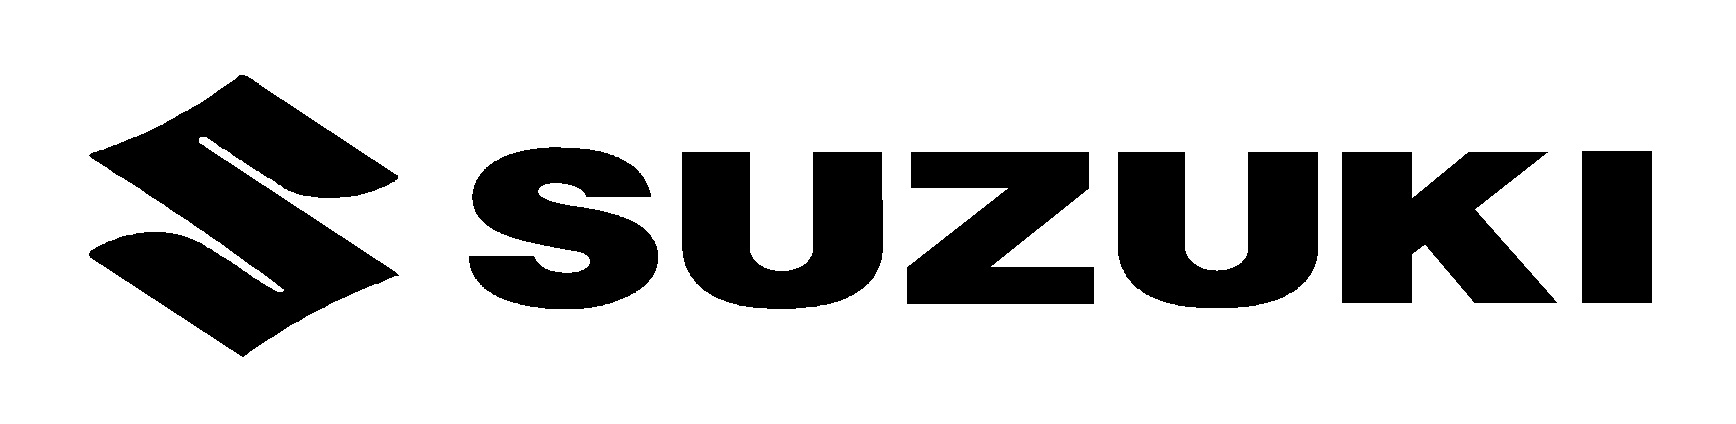 suzuki-logo-black